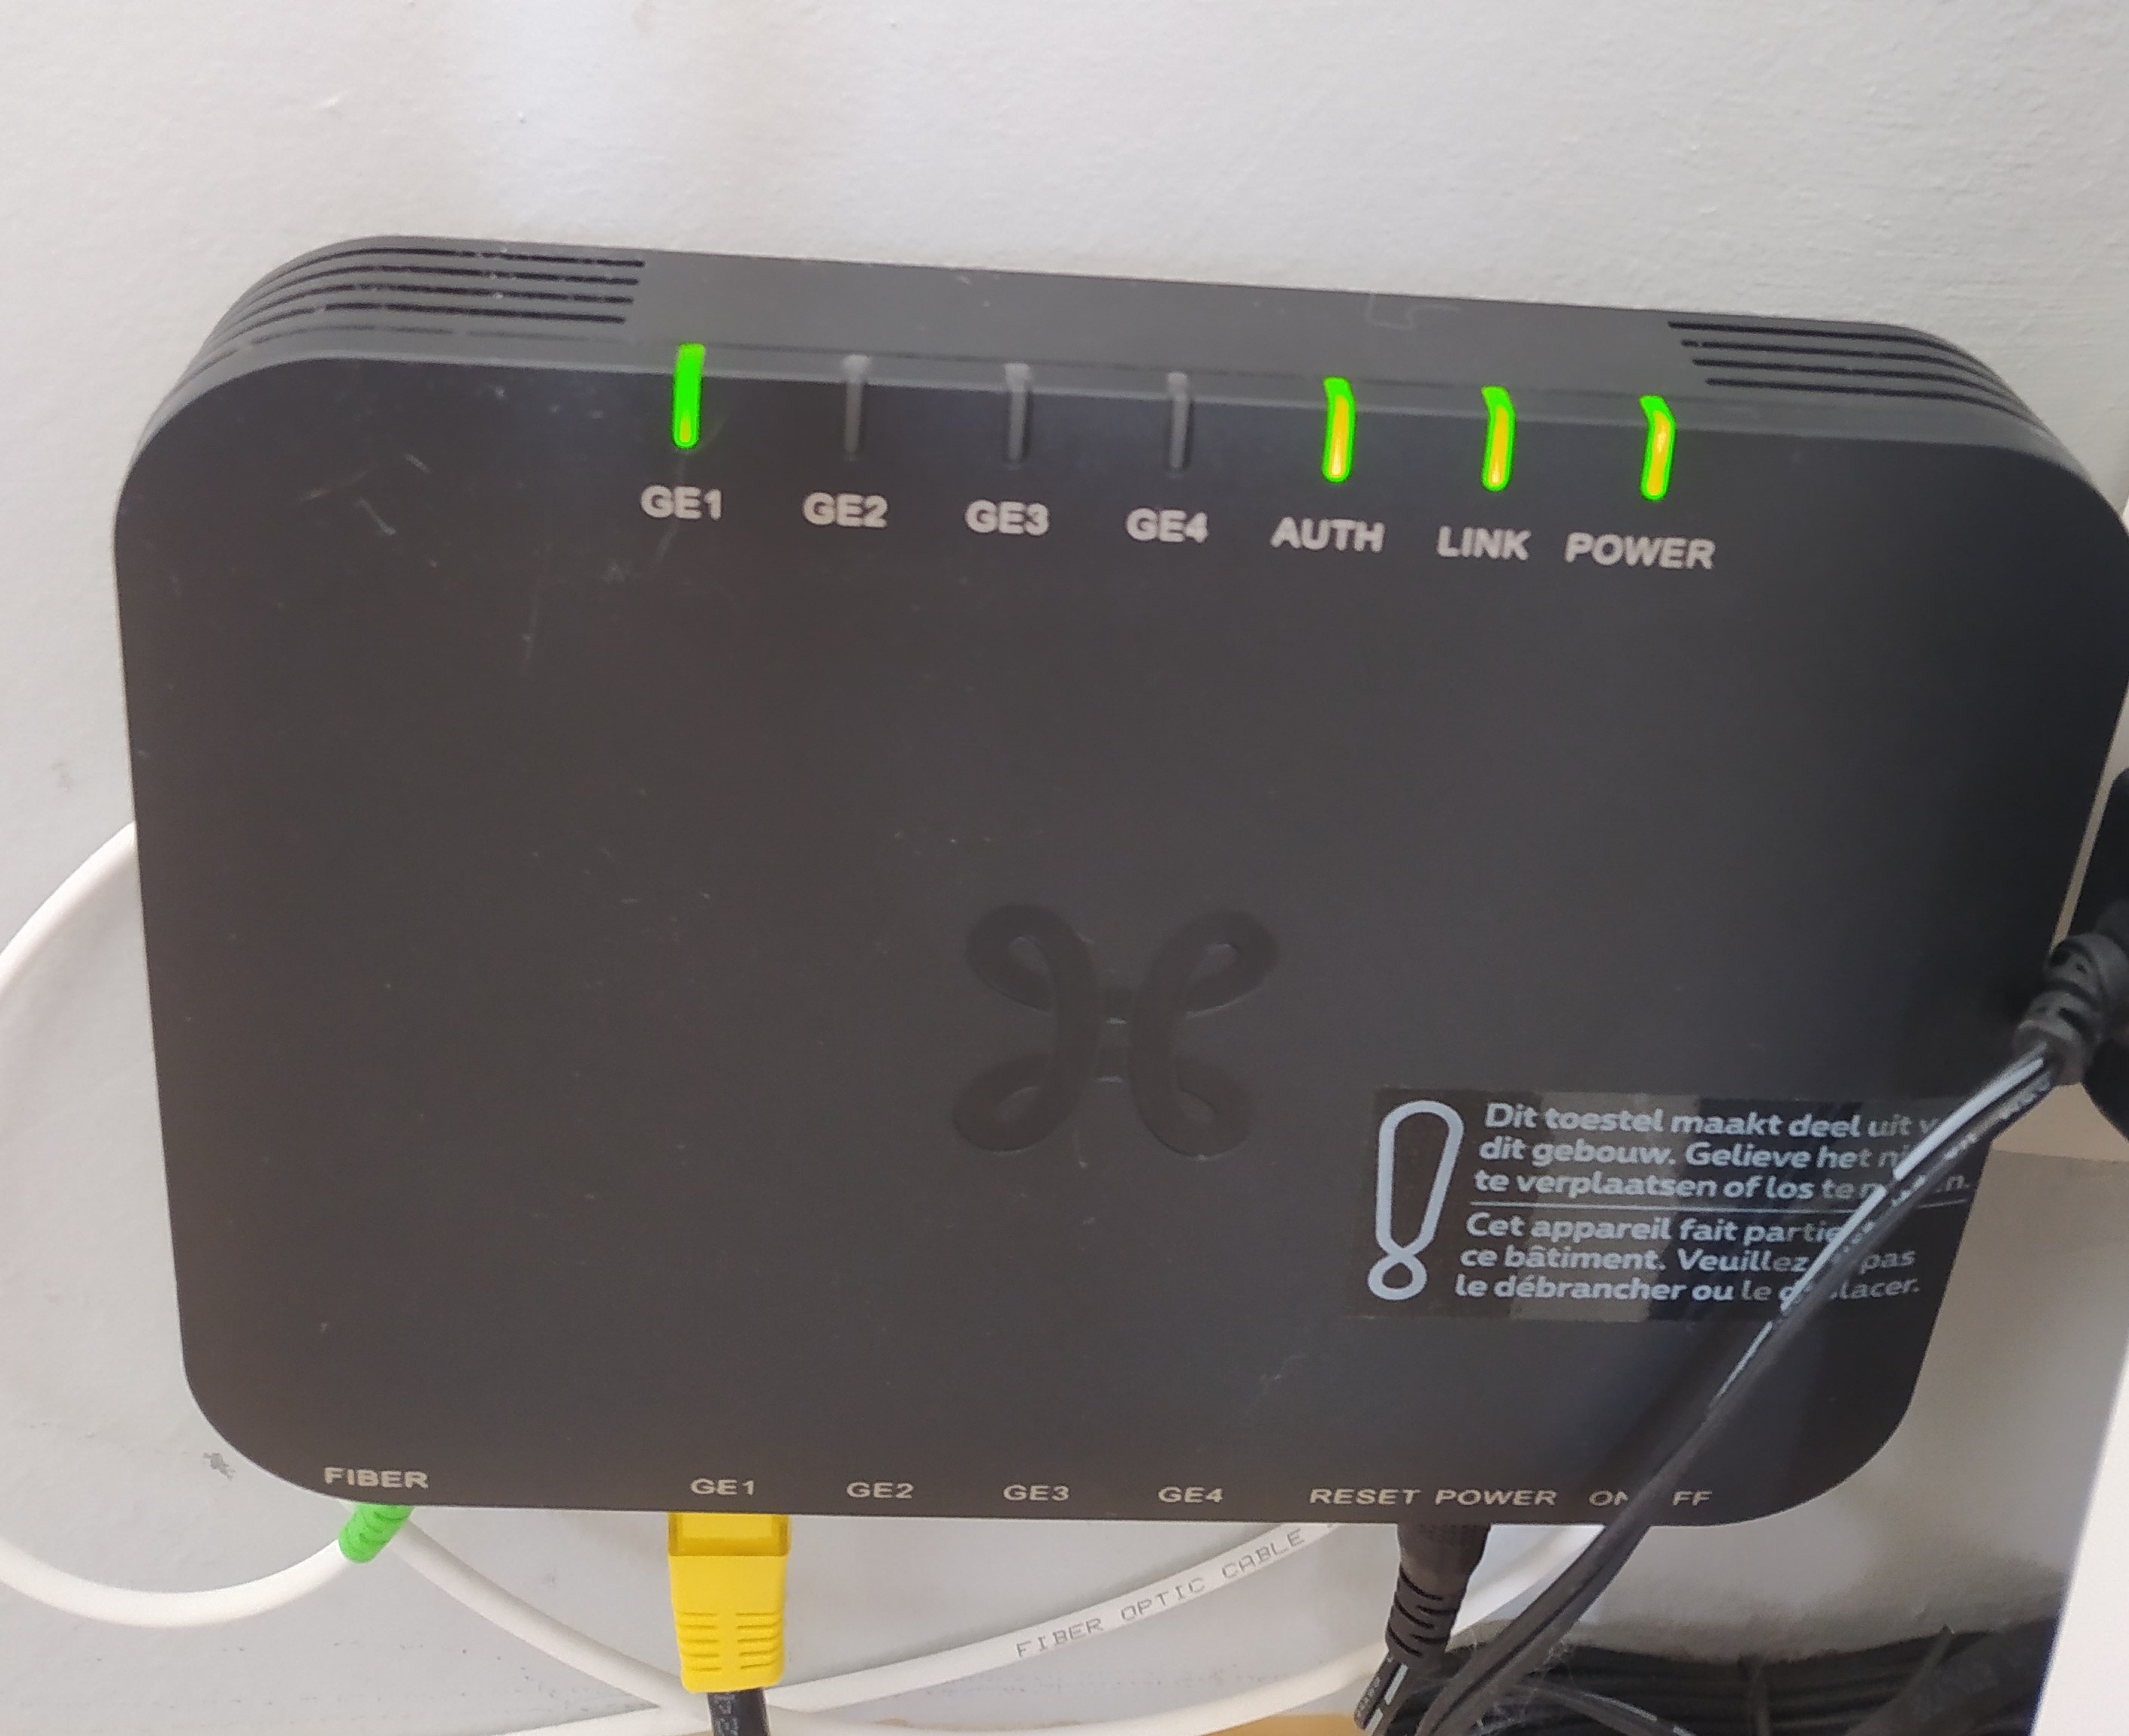 RBK352 - Problème de connexion via Ethernet - NETGEAR Communities